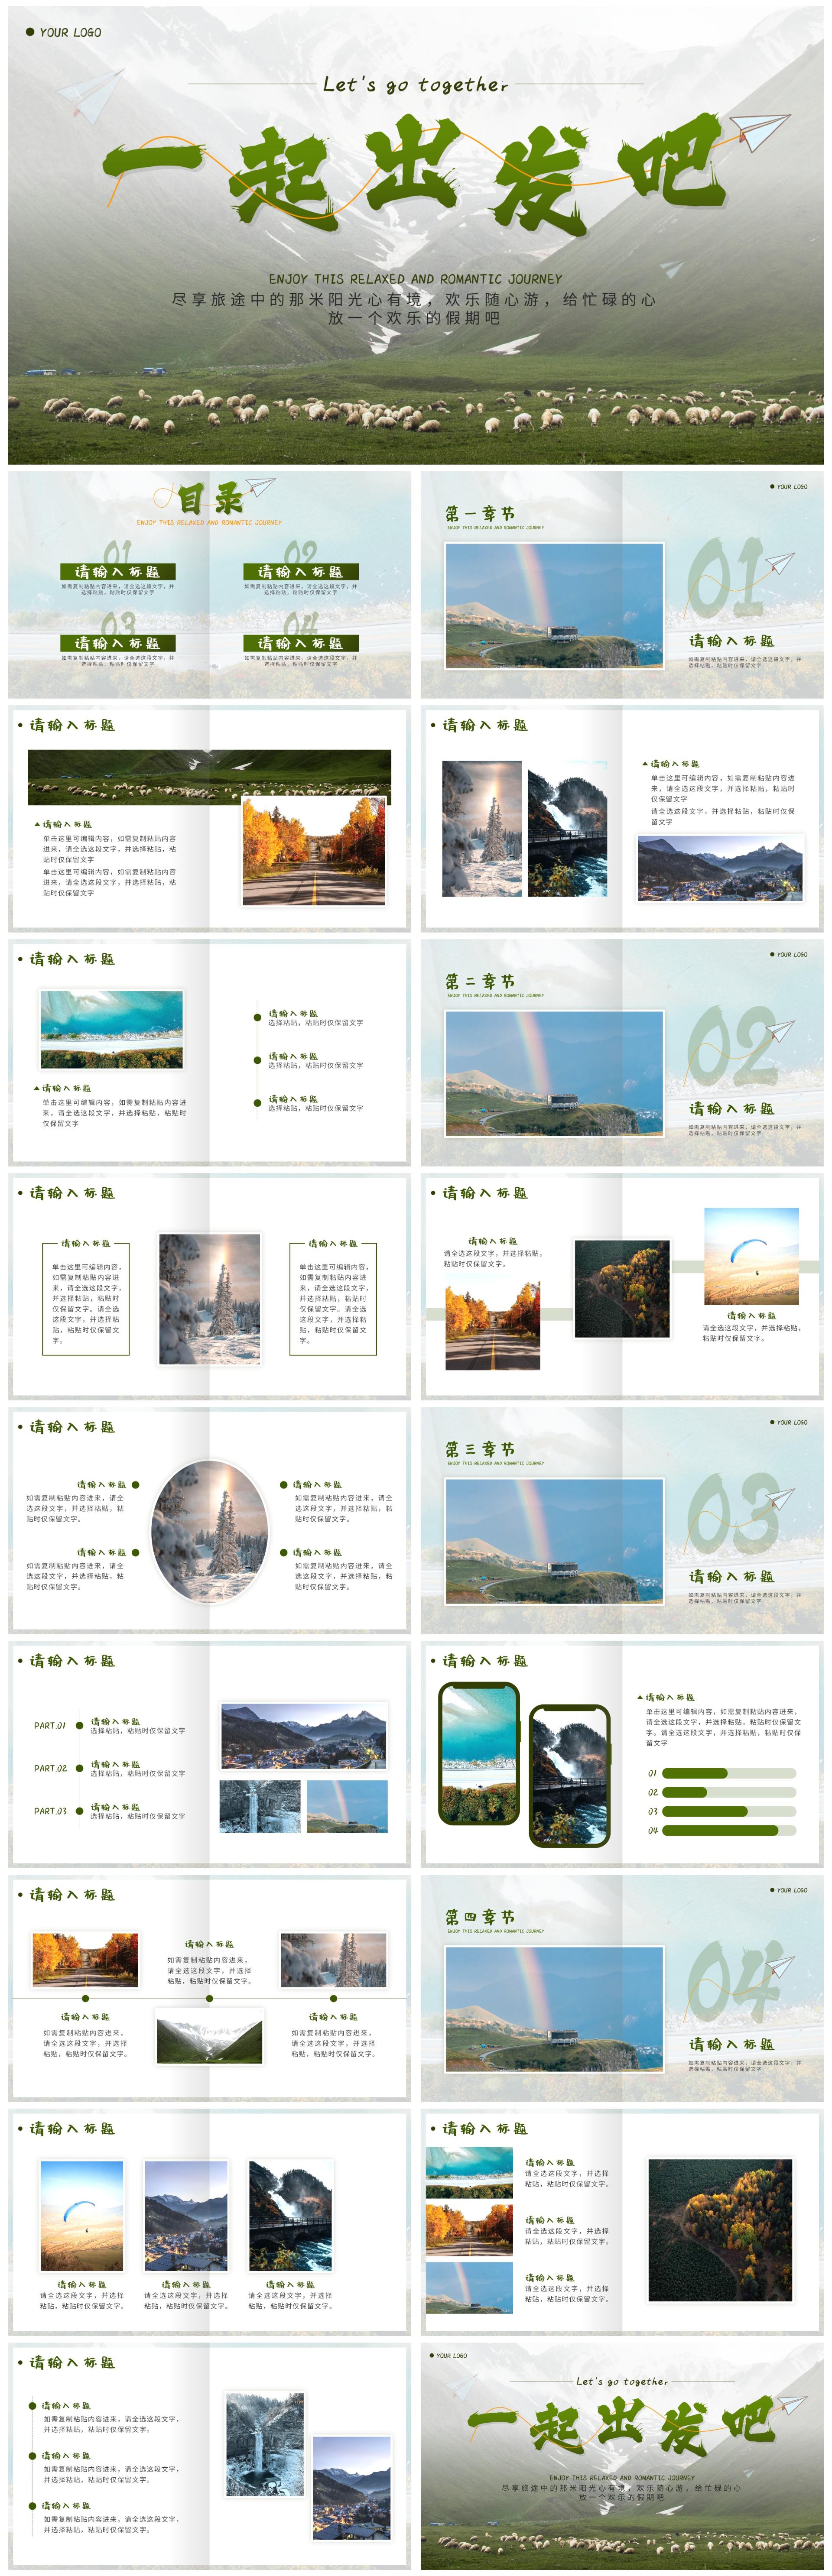 绿色实景一起出发吧旅游画册PPT模板